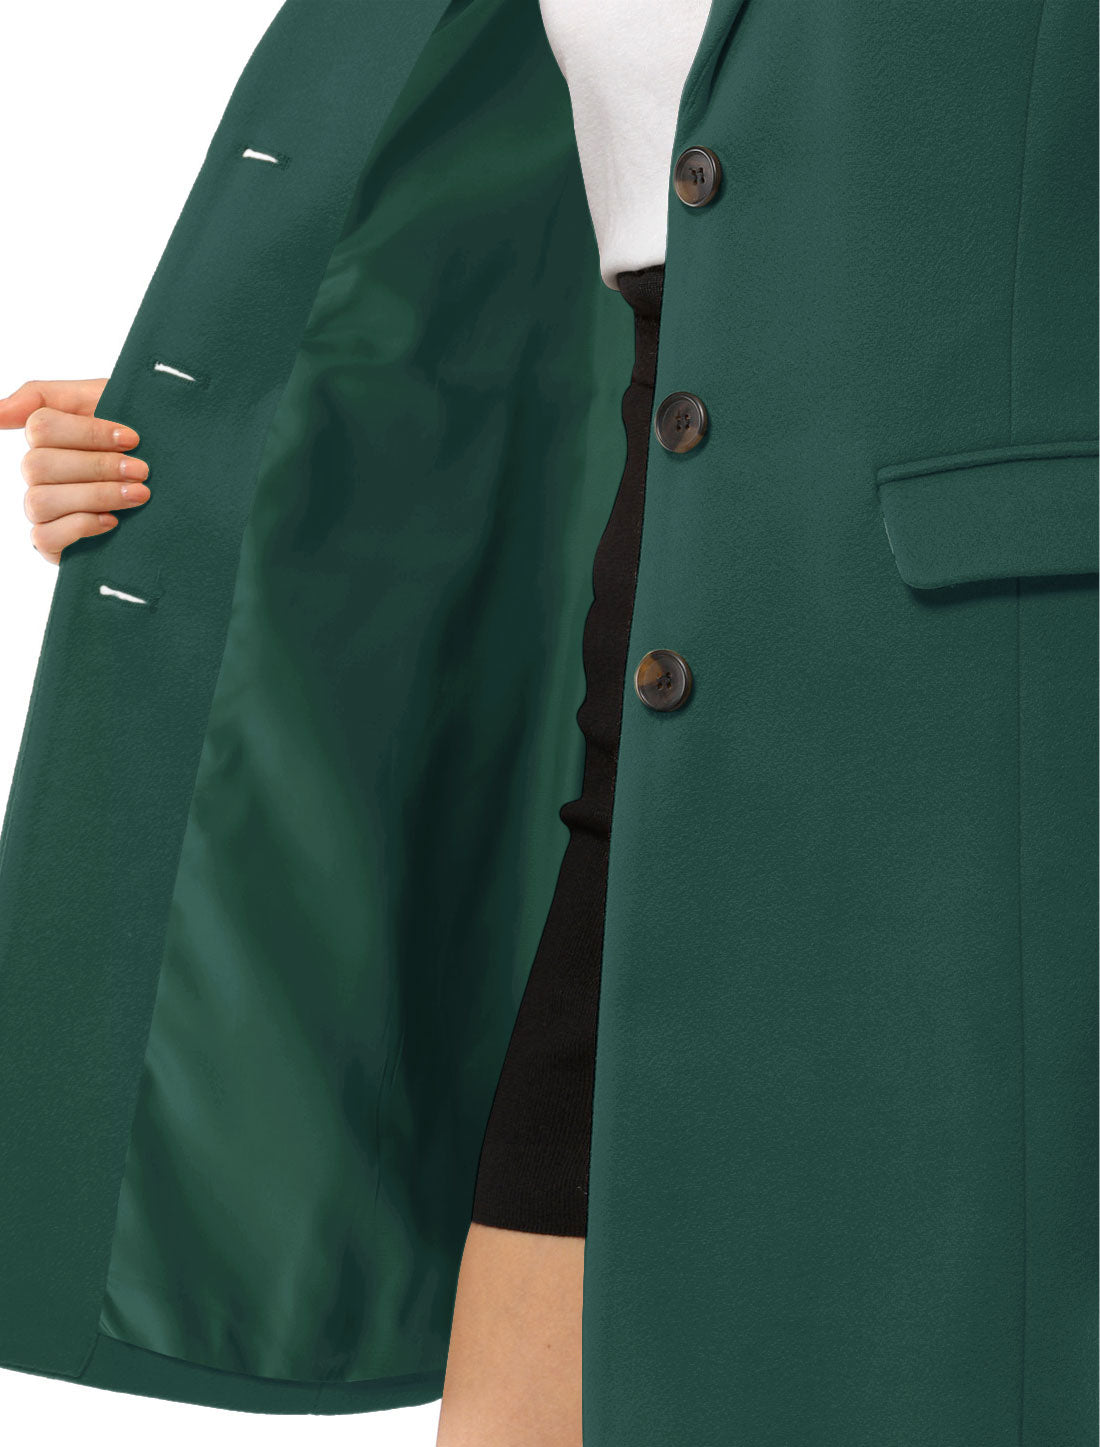 Allegra K Notched Lapel Single Breasted Outwear Winter Coat Green